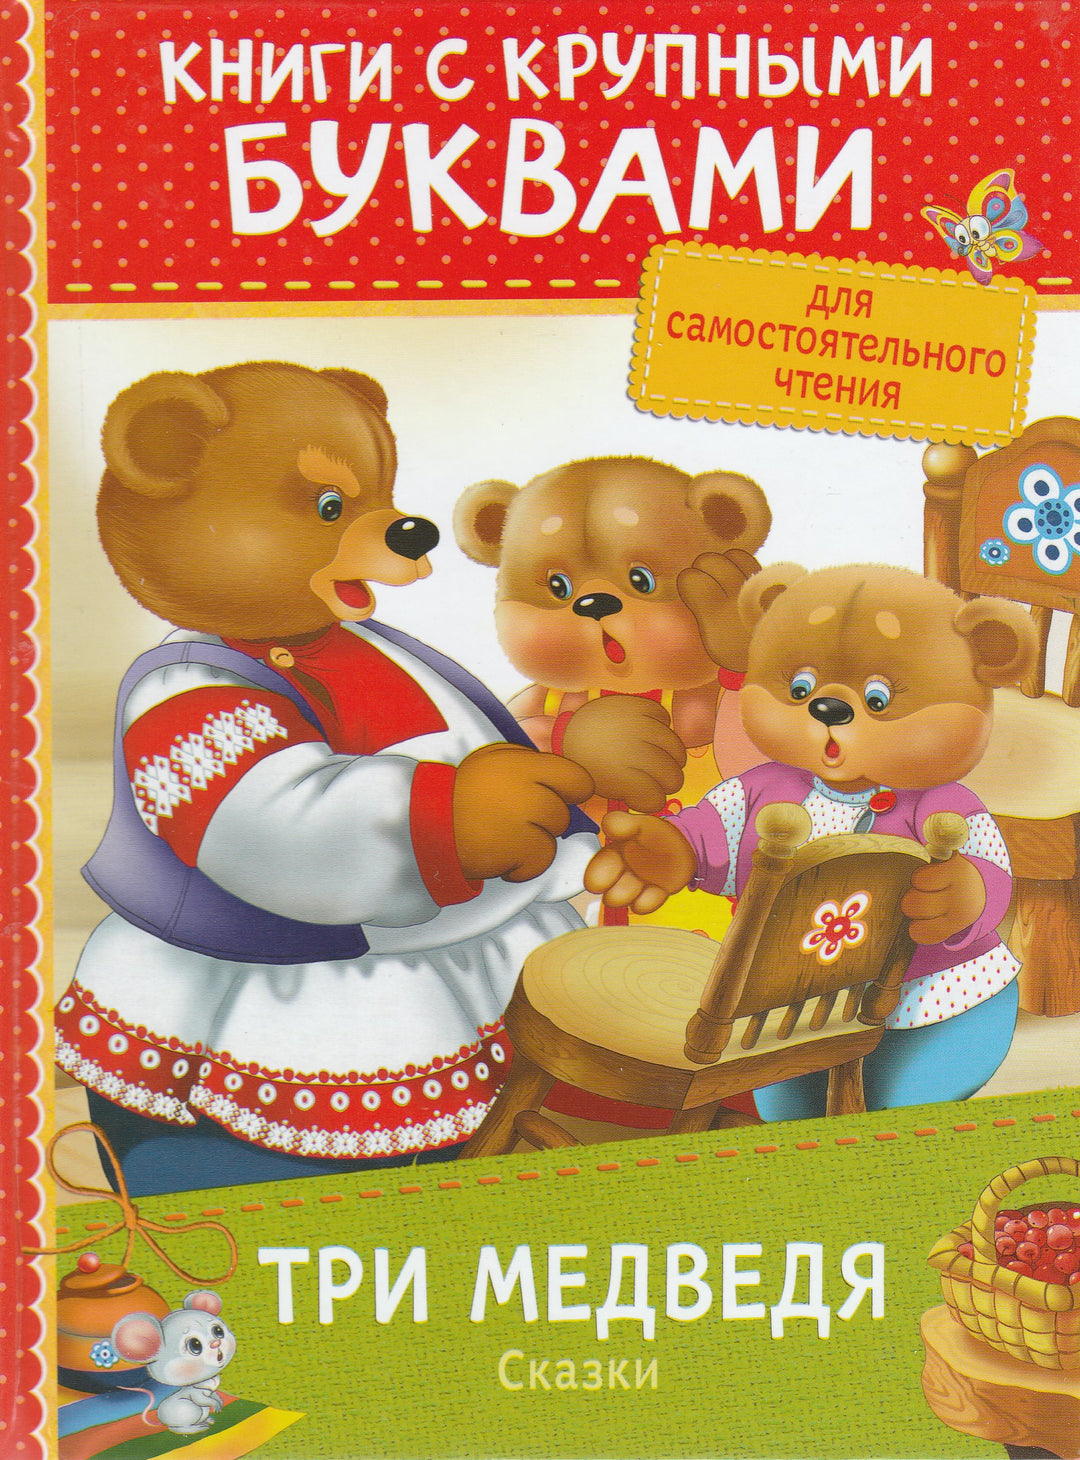 Три медведя. Сказки. Книги с крупными буквами-Лемко Д.-Росмэн-Lookomorie